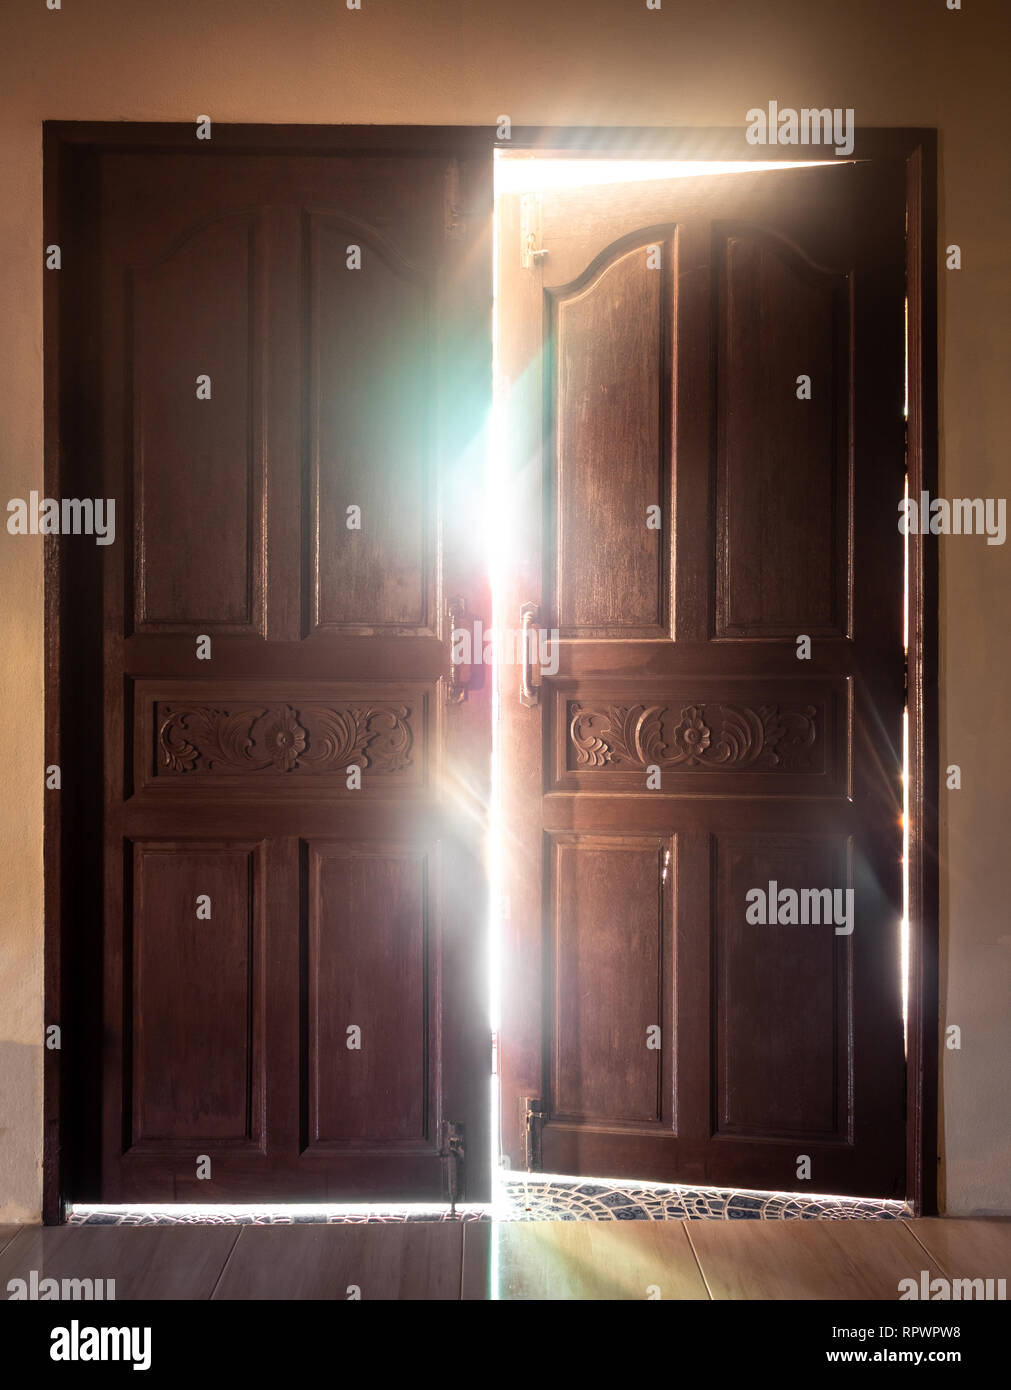 Open door light concept Stock Photo - Alamy